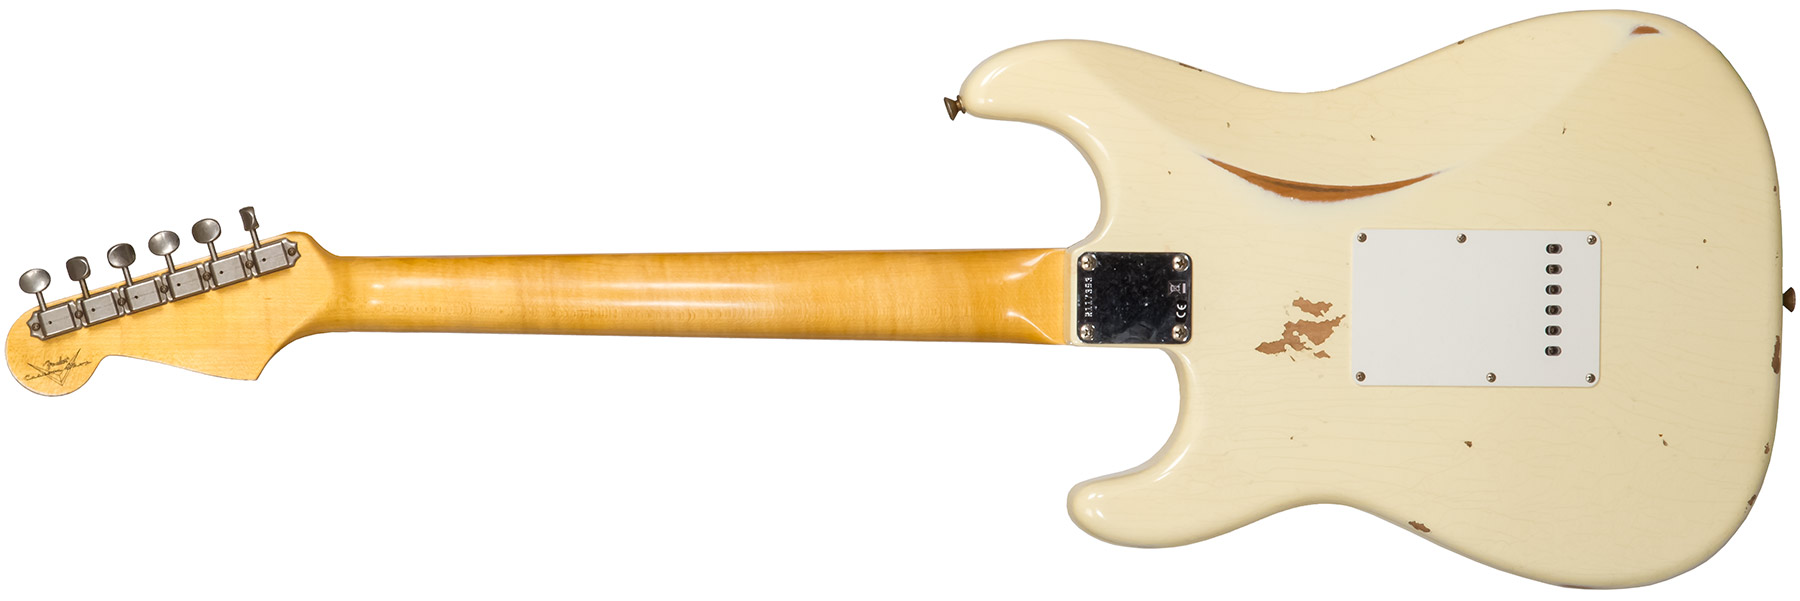 Fender Custom Shop Strat 1959 3s Trem Rw #r117393 - Relic Aged Vintage White - Elektrische gitaar in Str-vorm - Variation 1